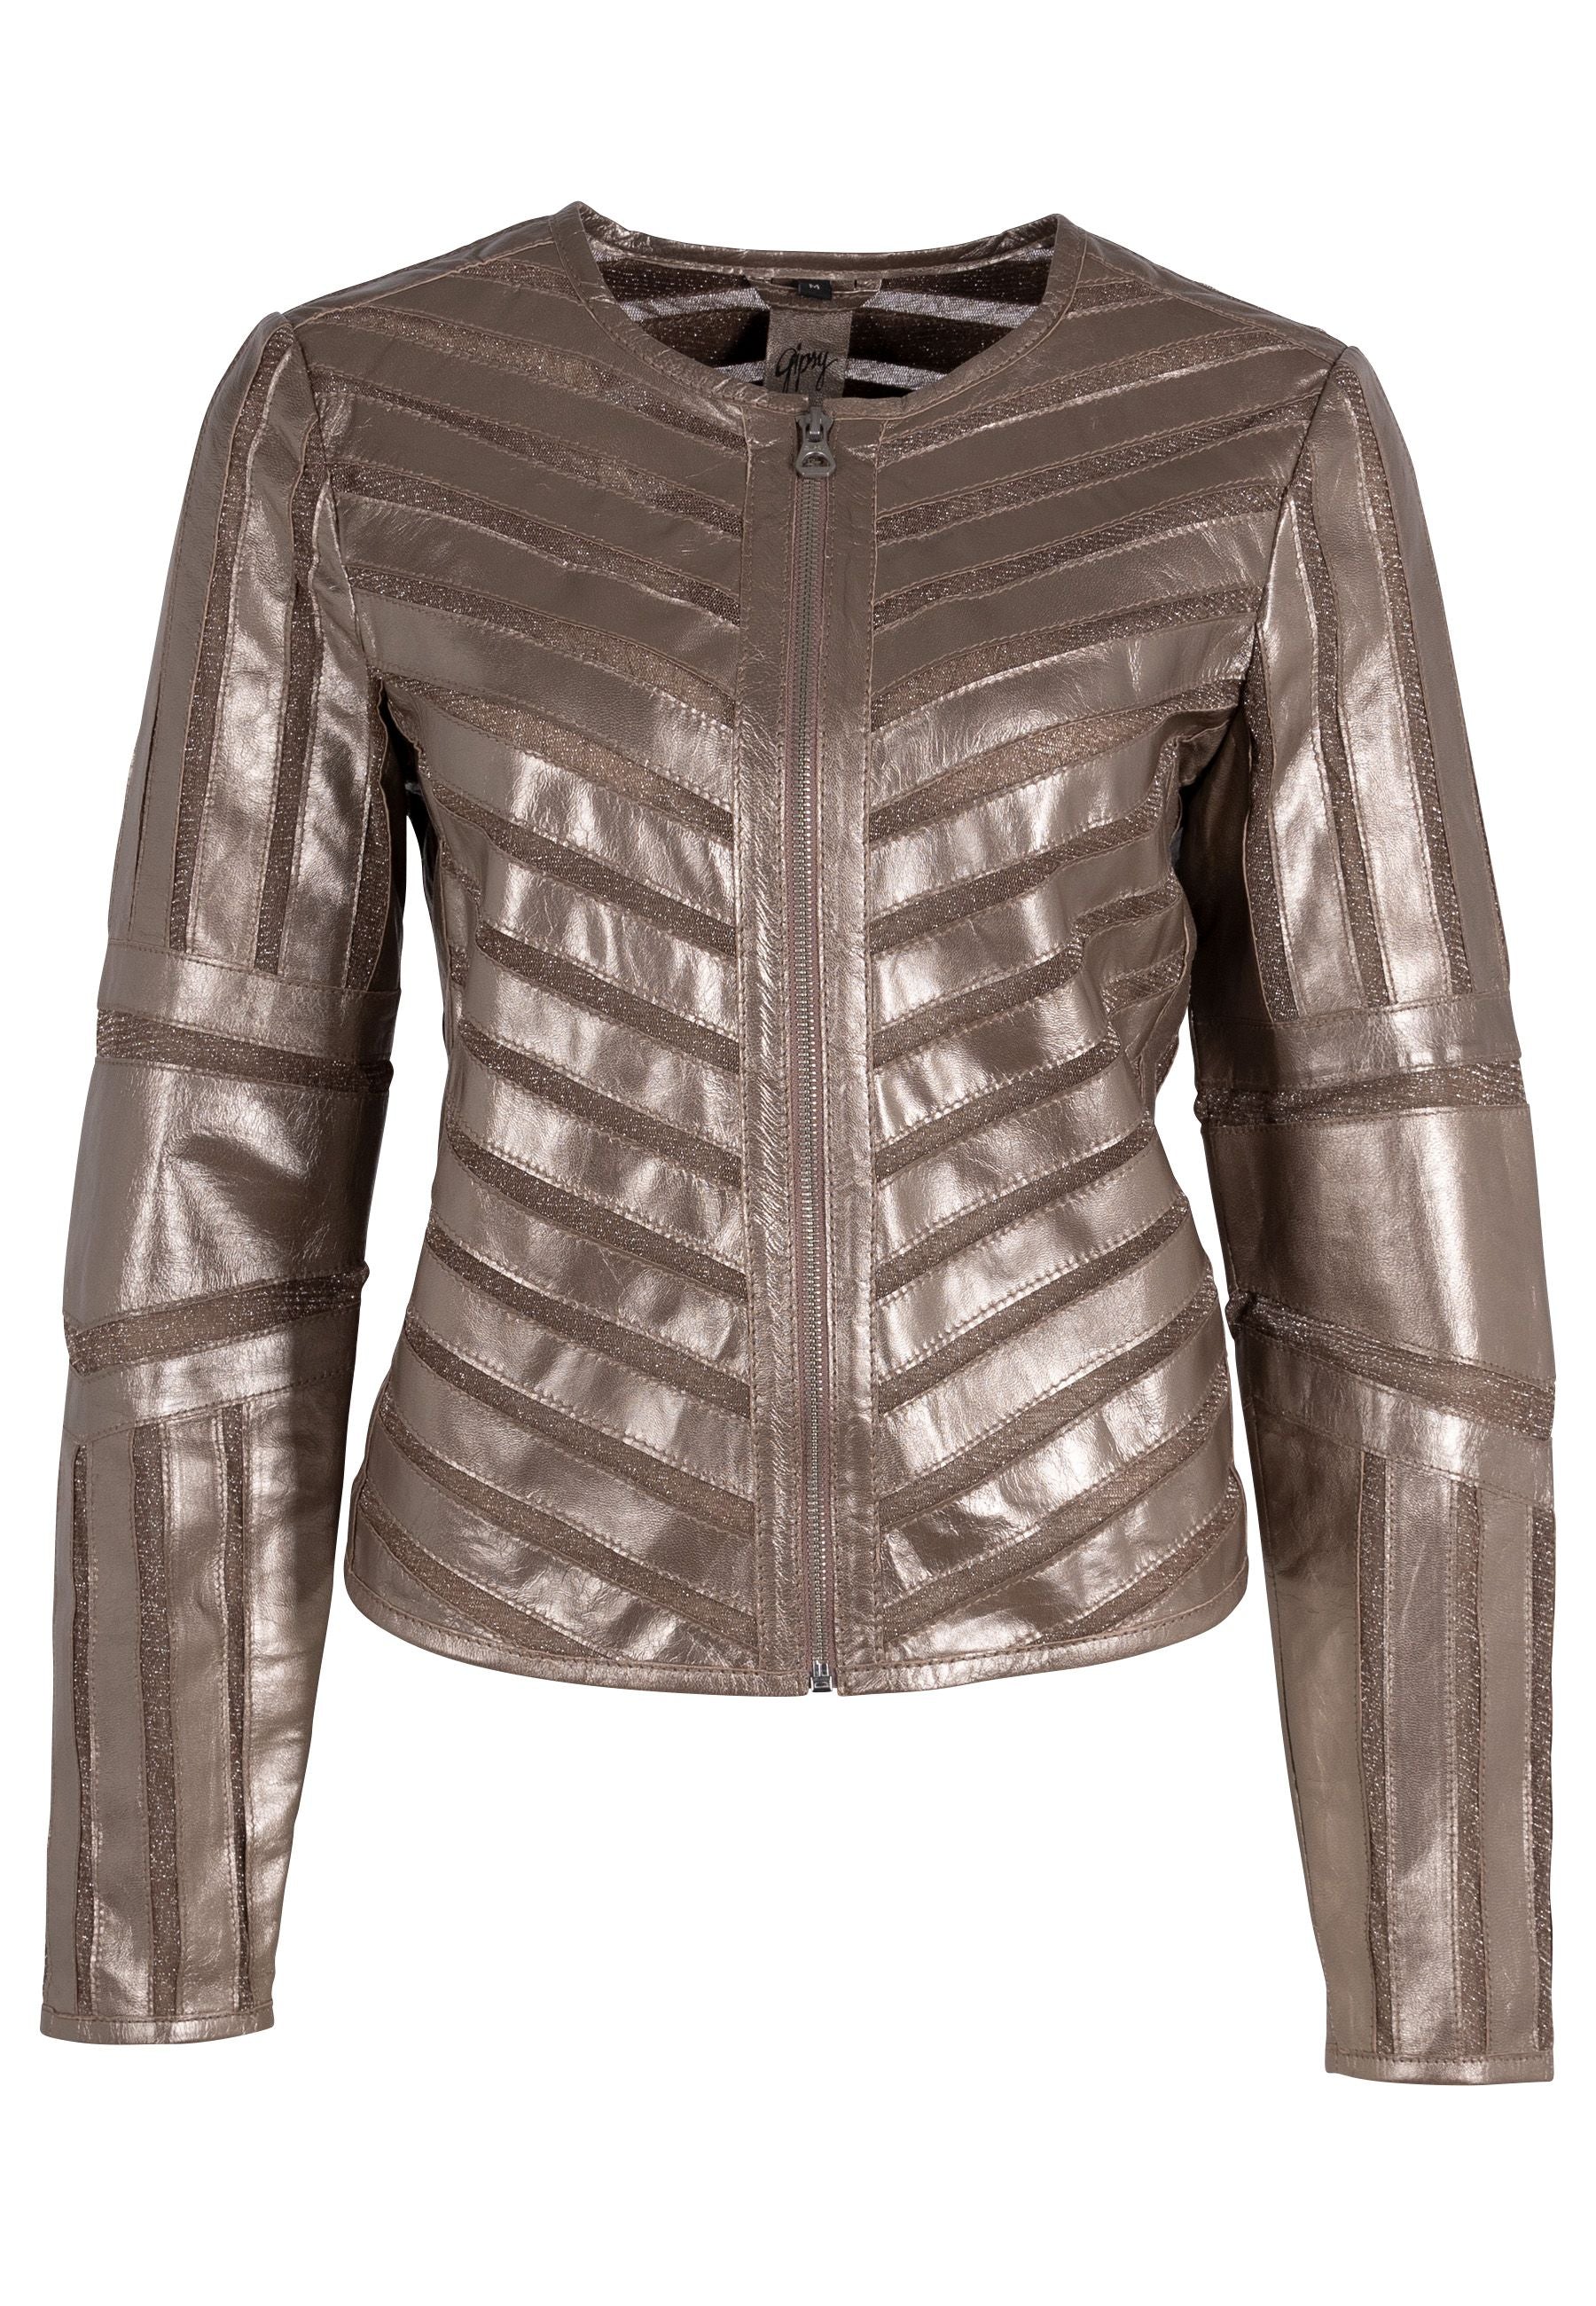 Mauritius Women's Yula Rf Leather Jacket, Silver In Metallic